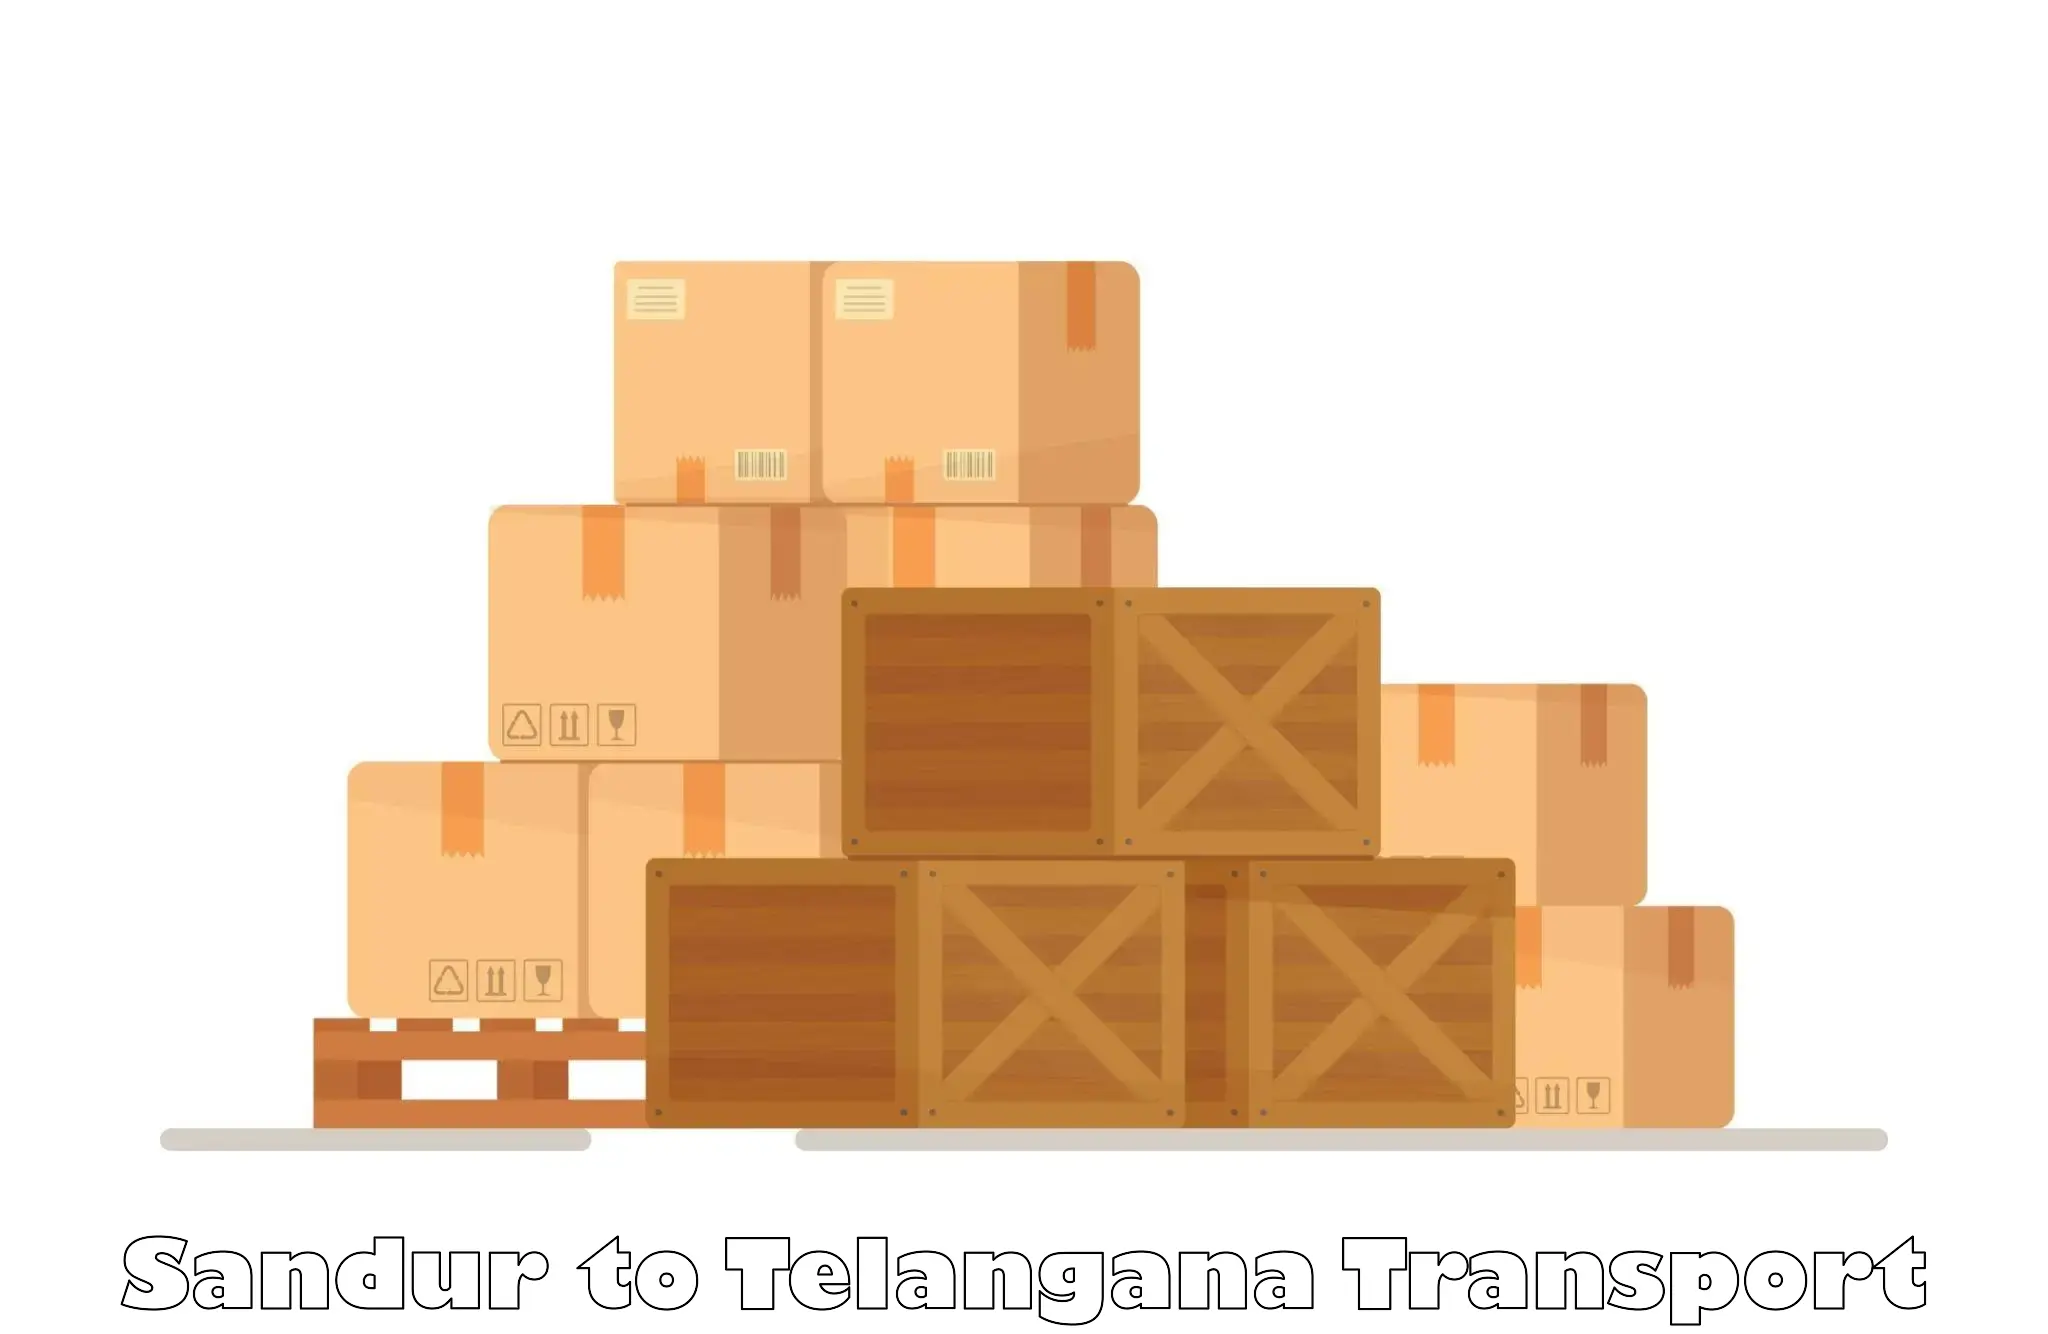 Intercity goods transport Sandur to Telangana